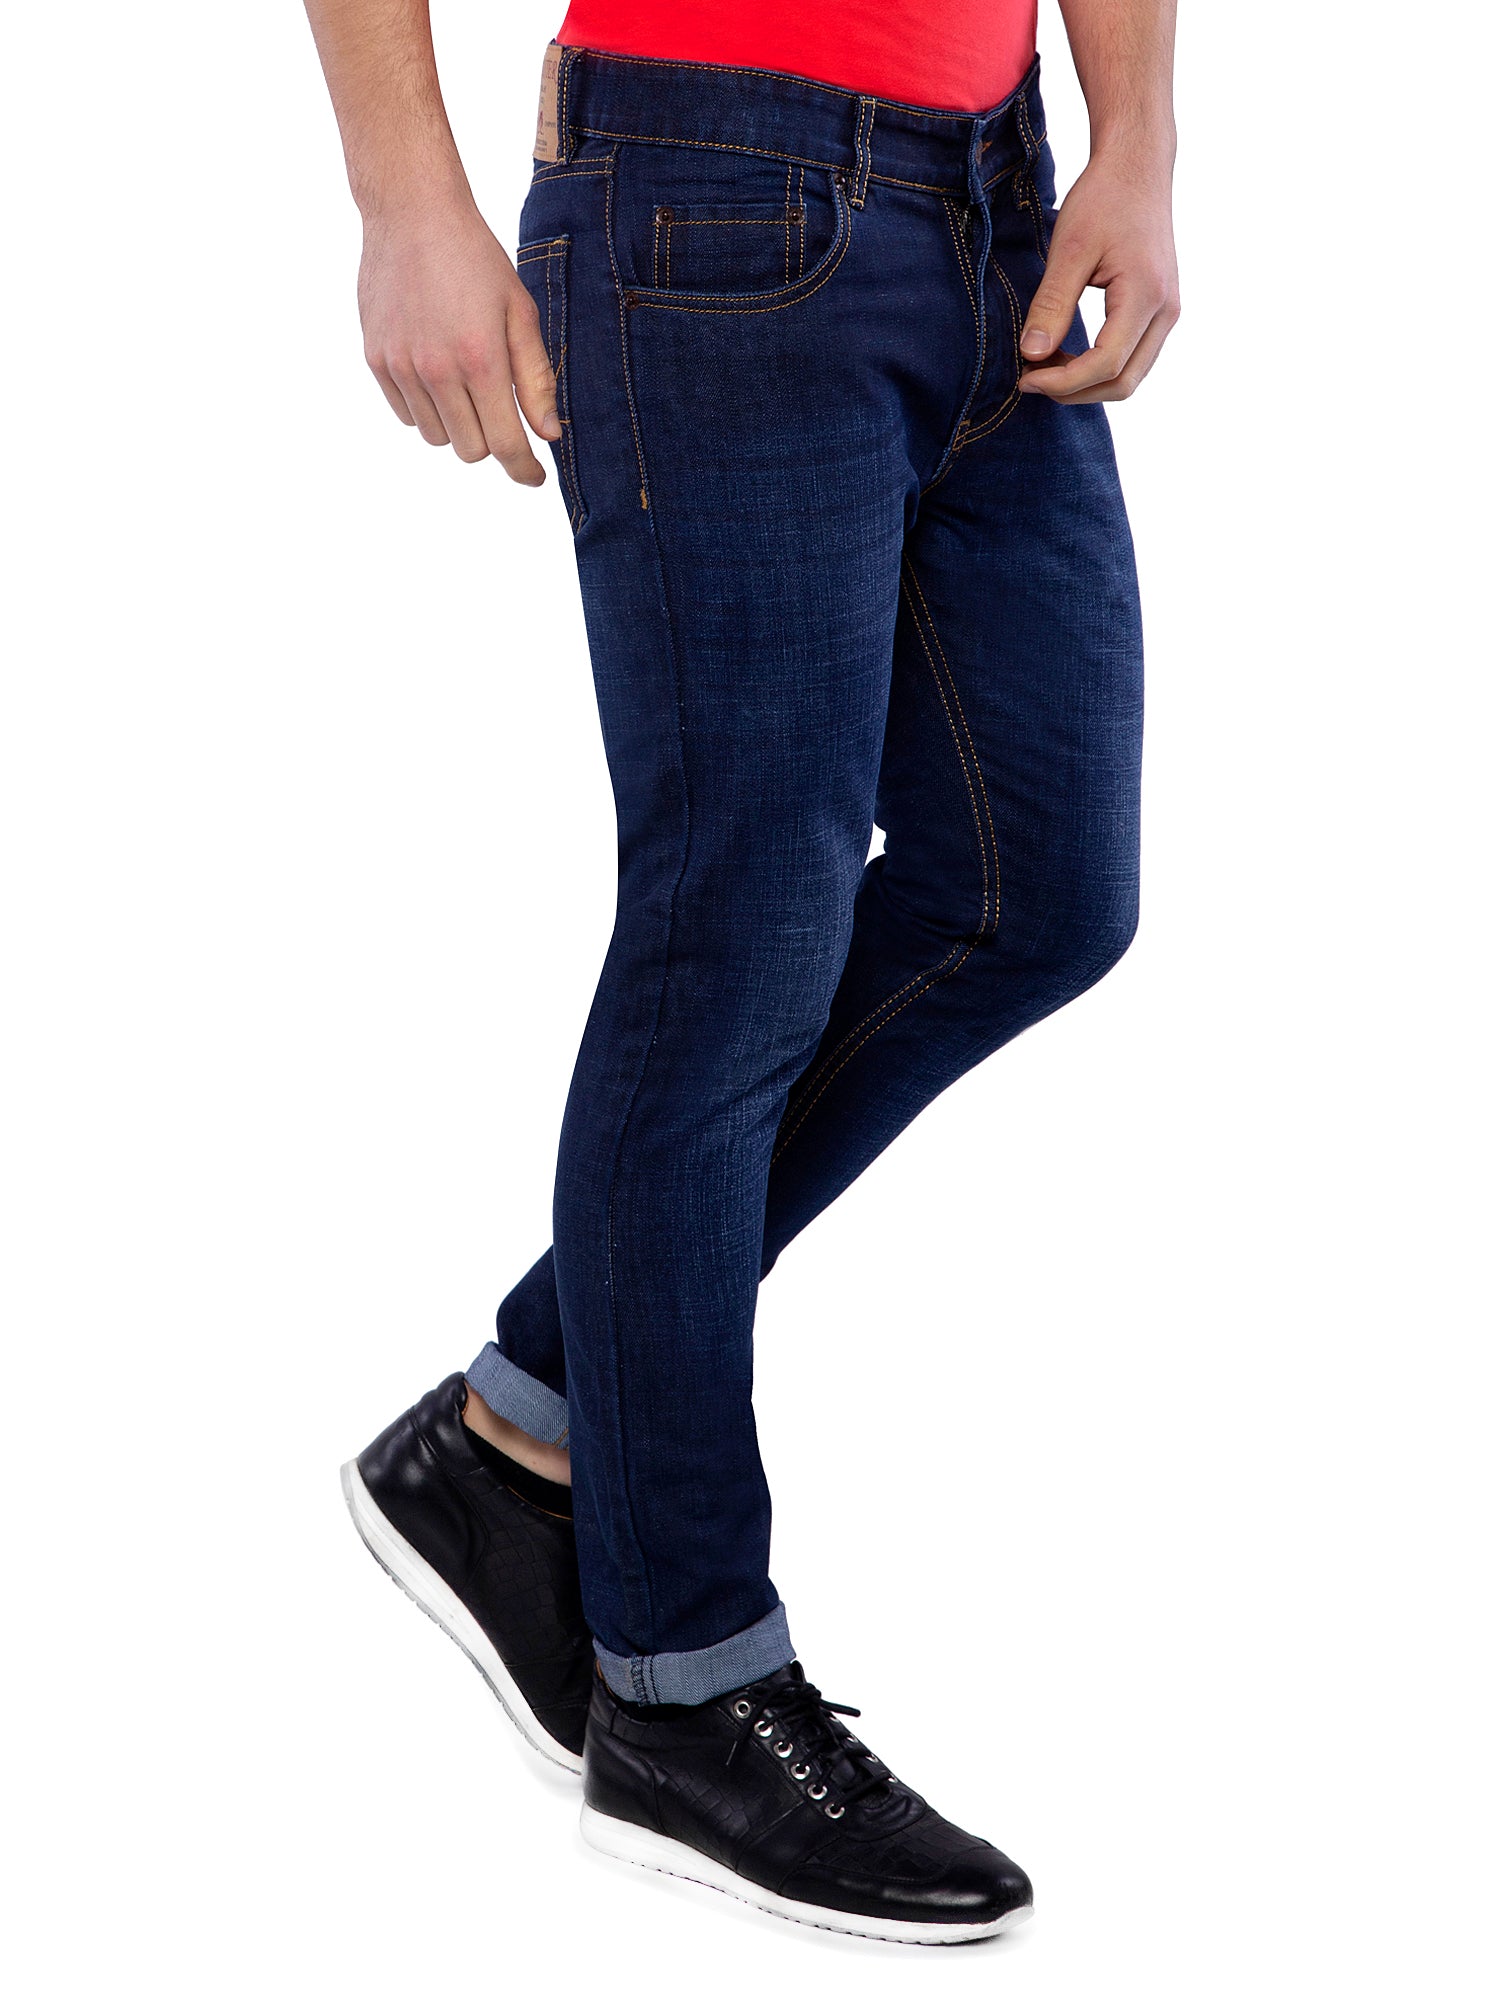 dark blue jeans mens slim fit